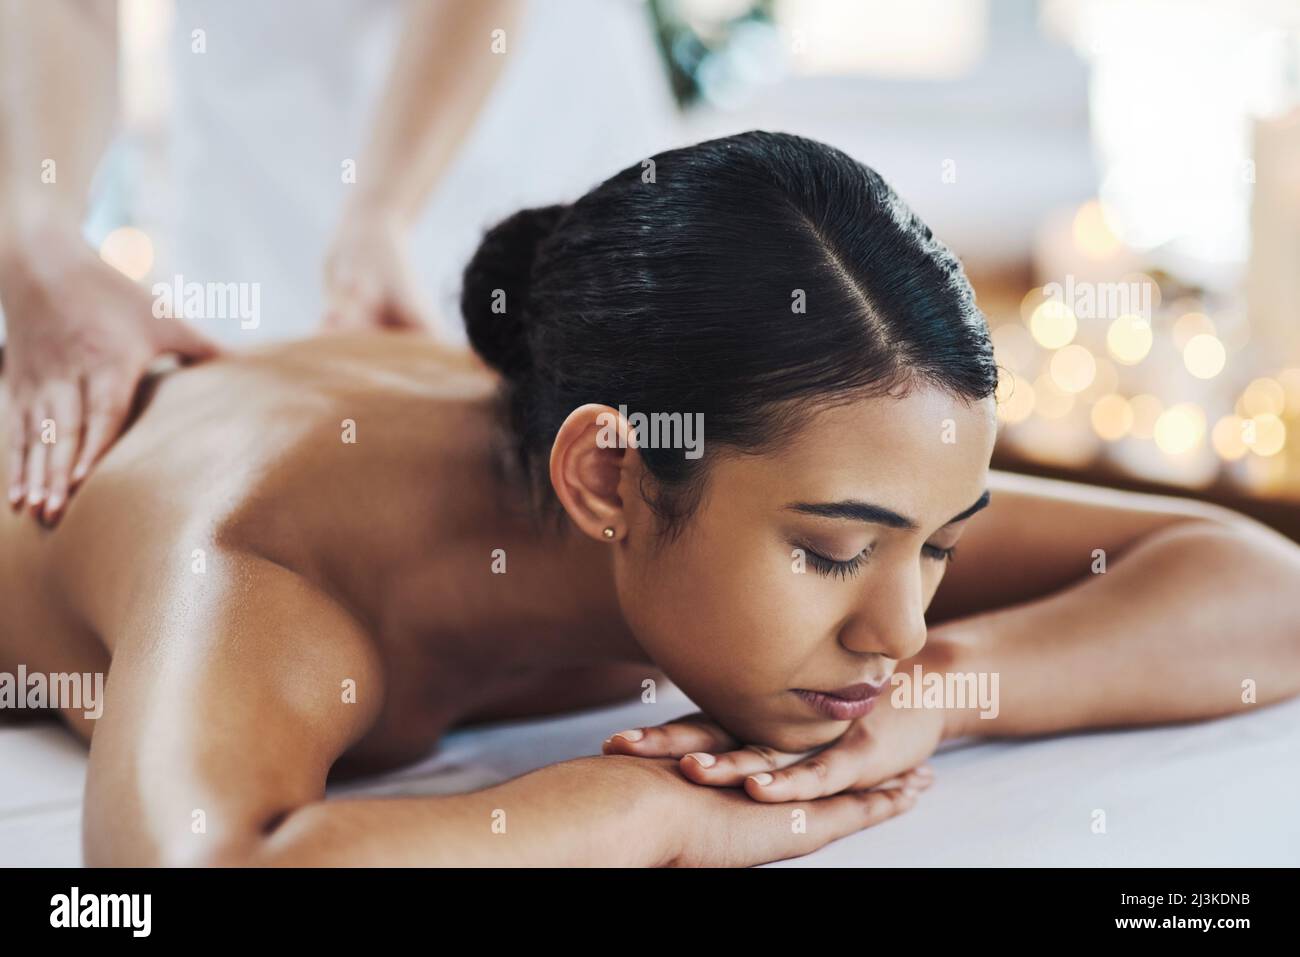 Mantieni la schiena dritta. Shot di una giovane donna allegra e rilassata che riceve un massaggio al coperto in una spa. Foto Stock